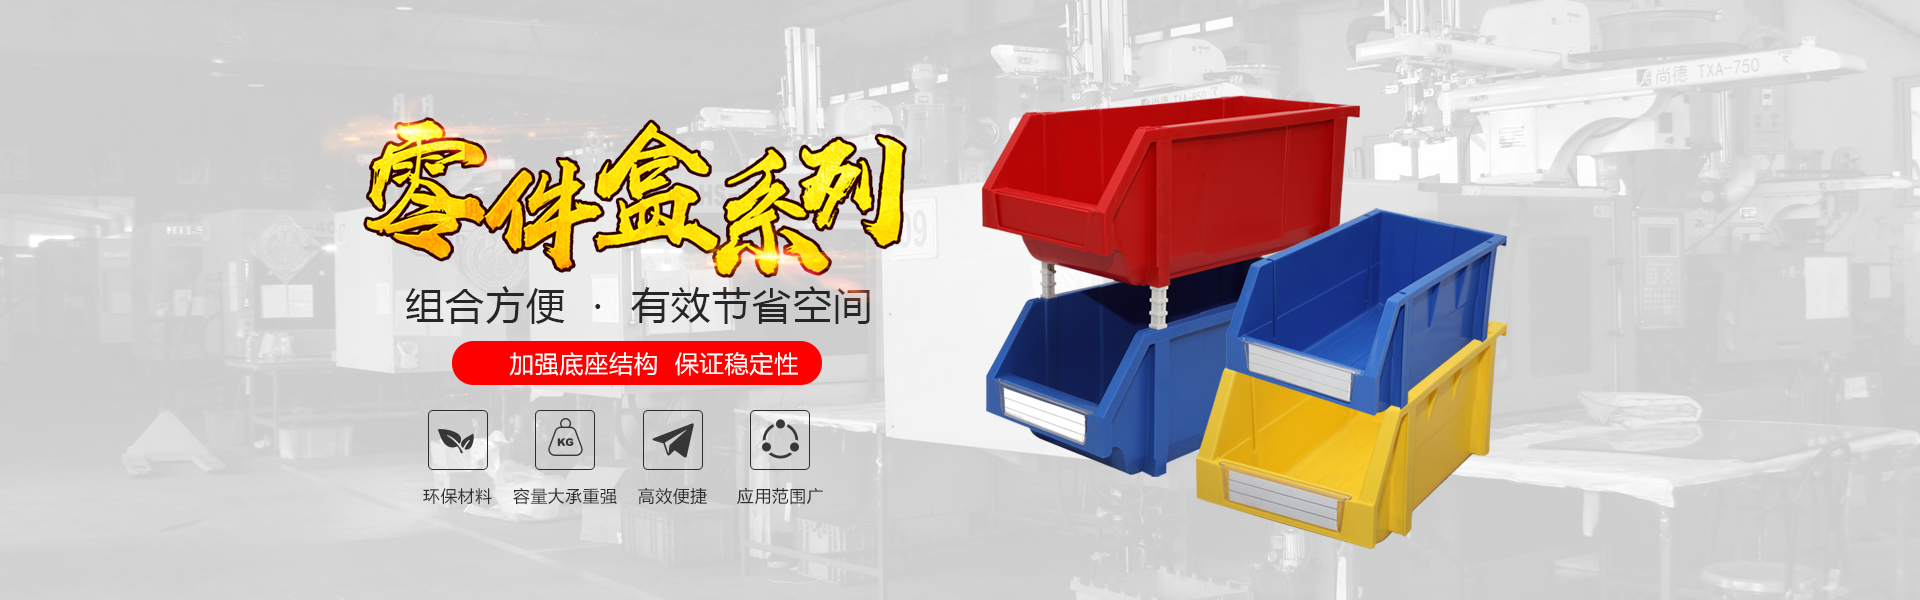 青岛j9国际自动化主营零件盒,塑料零件盒,塑料托盘等产品!